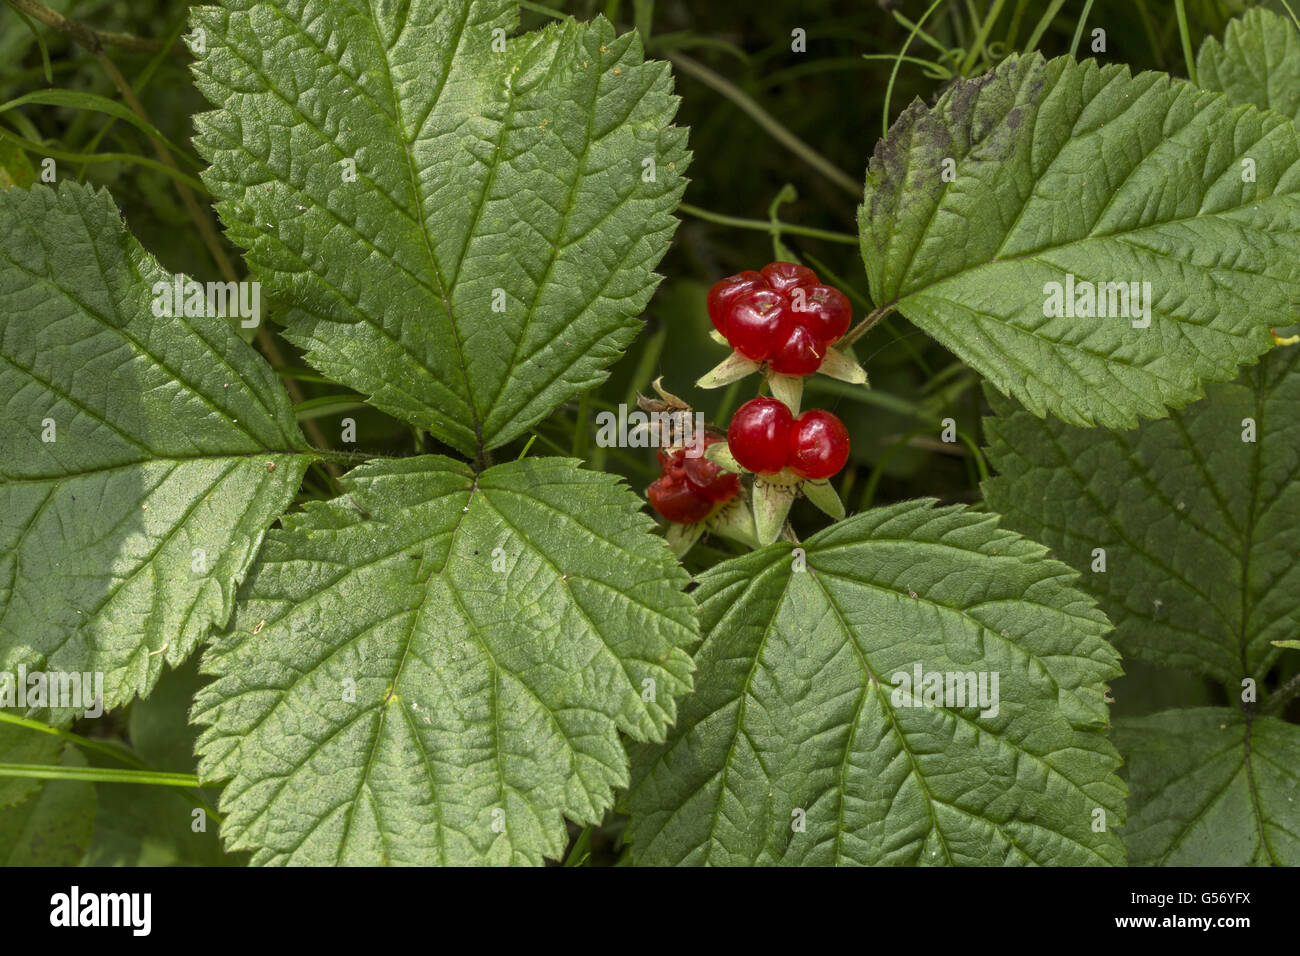 Stein-Brombeere (Rubus Inselbogens) Nahaufnahme von Blättern und Früchten, Italienische Alpen, Italien, Juli Stockfoto